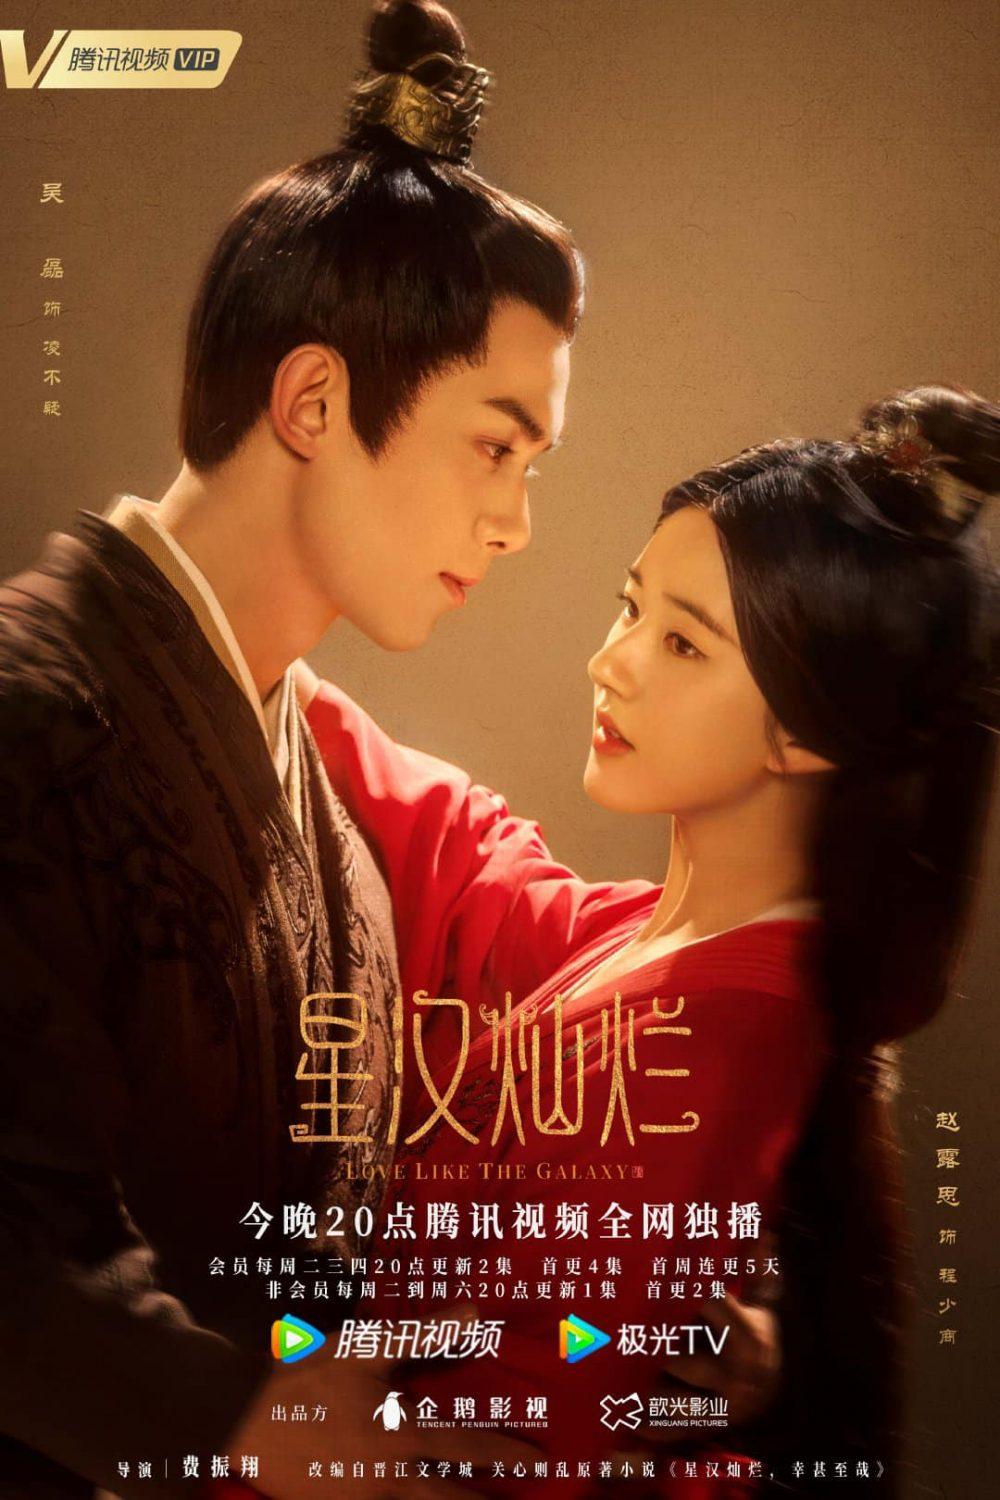 Poster phim Tinh Hán Xán Lạn do Tencent đăng tải (ảnh: internet)